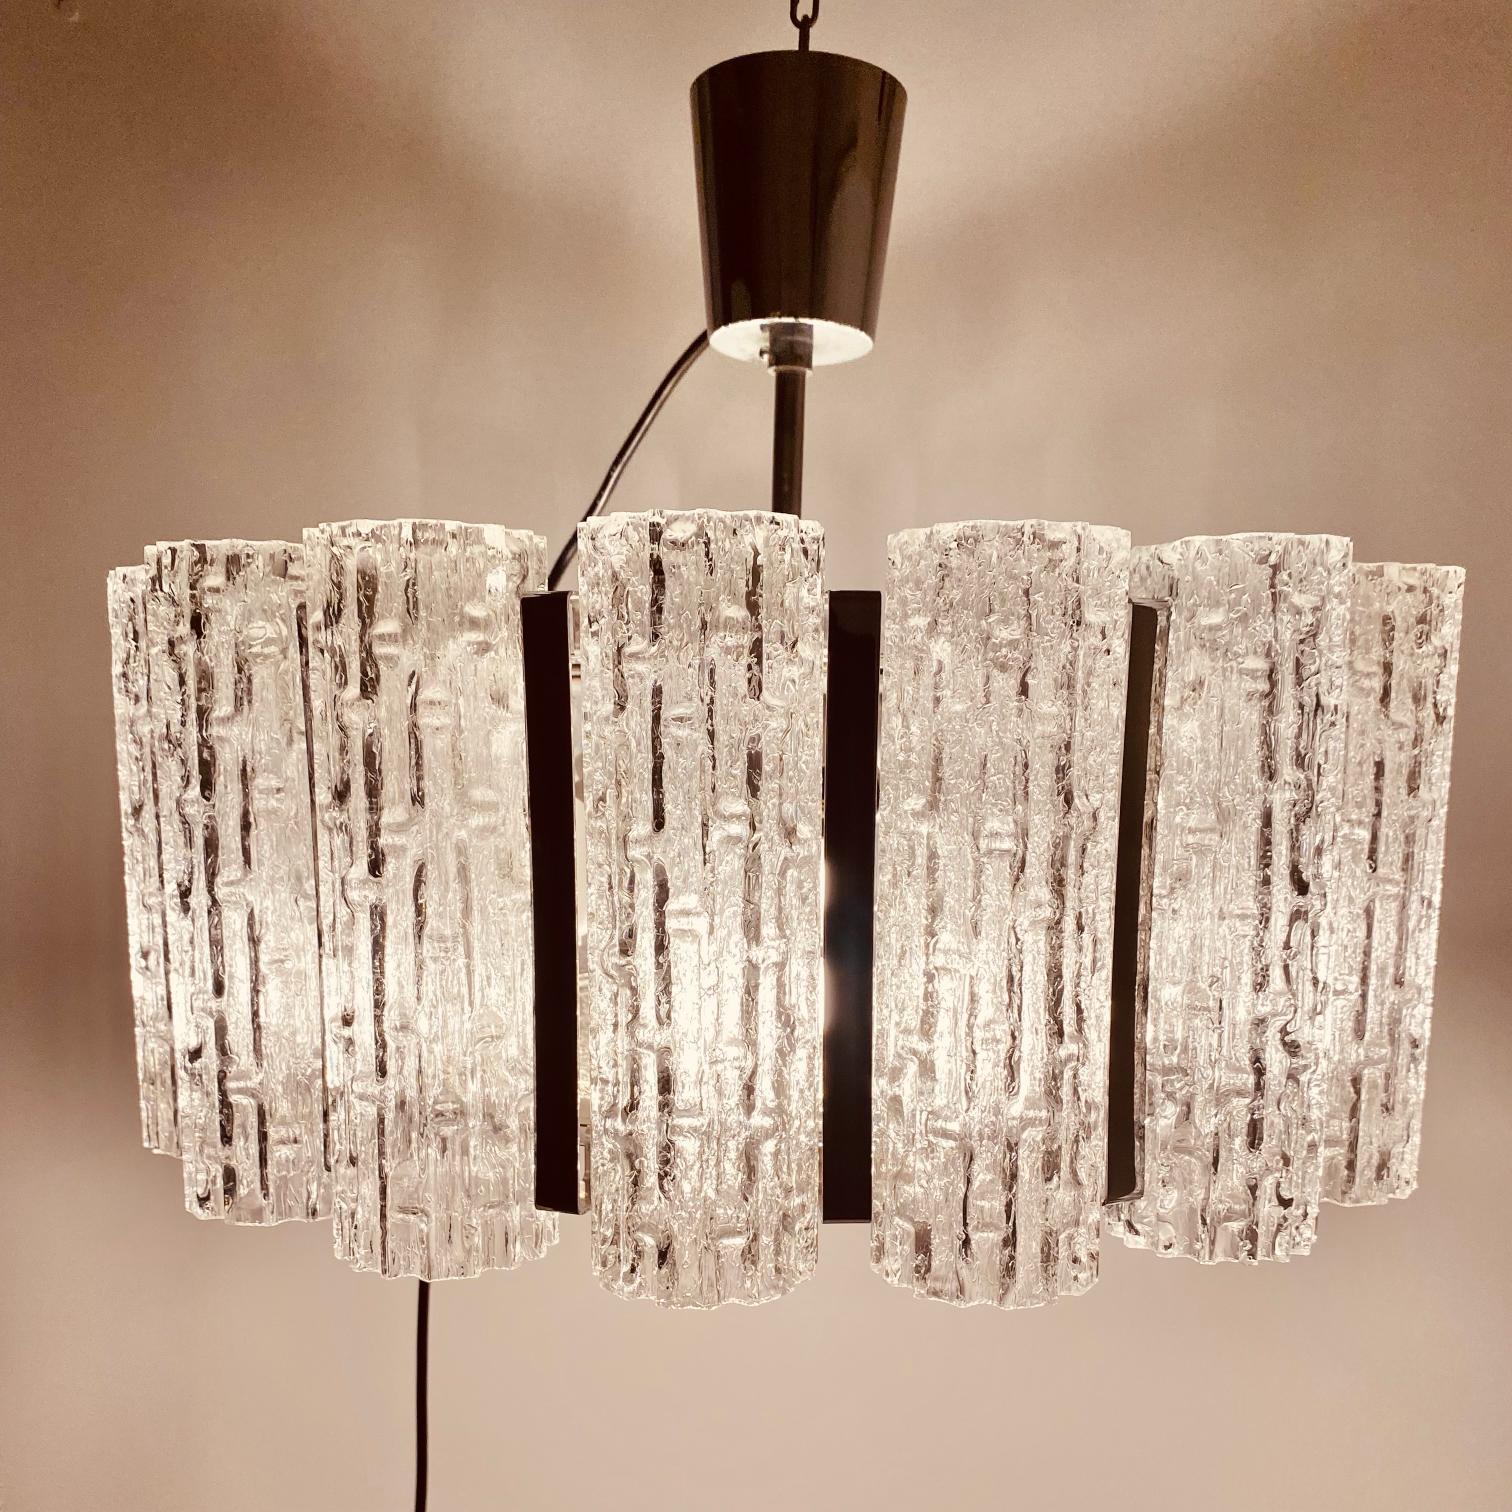 Lustre en verre de Murano produit au milieu des années 1960 par Barovier&Toso (Venise).

Ce magnifique lustre vintage rond se compose de 16 tubes de verre finement finis et d'une grande feuille de verre glacé à la base de la lampe. 

La structure du